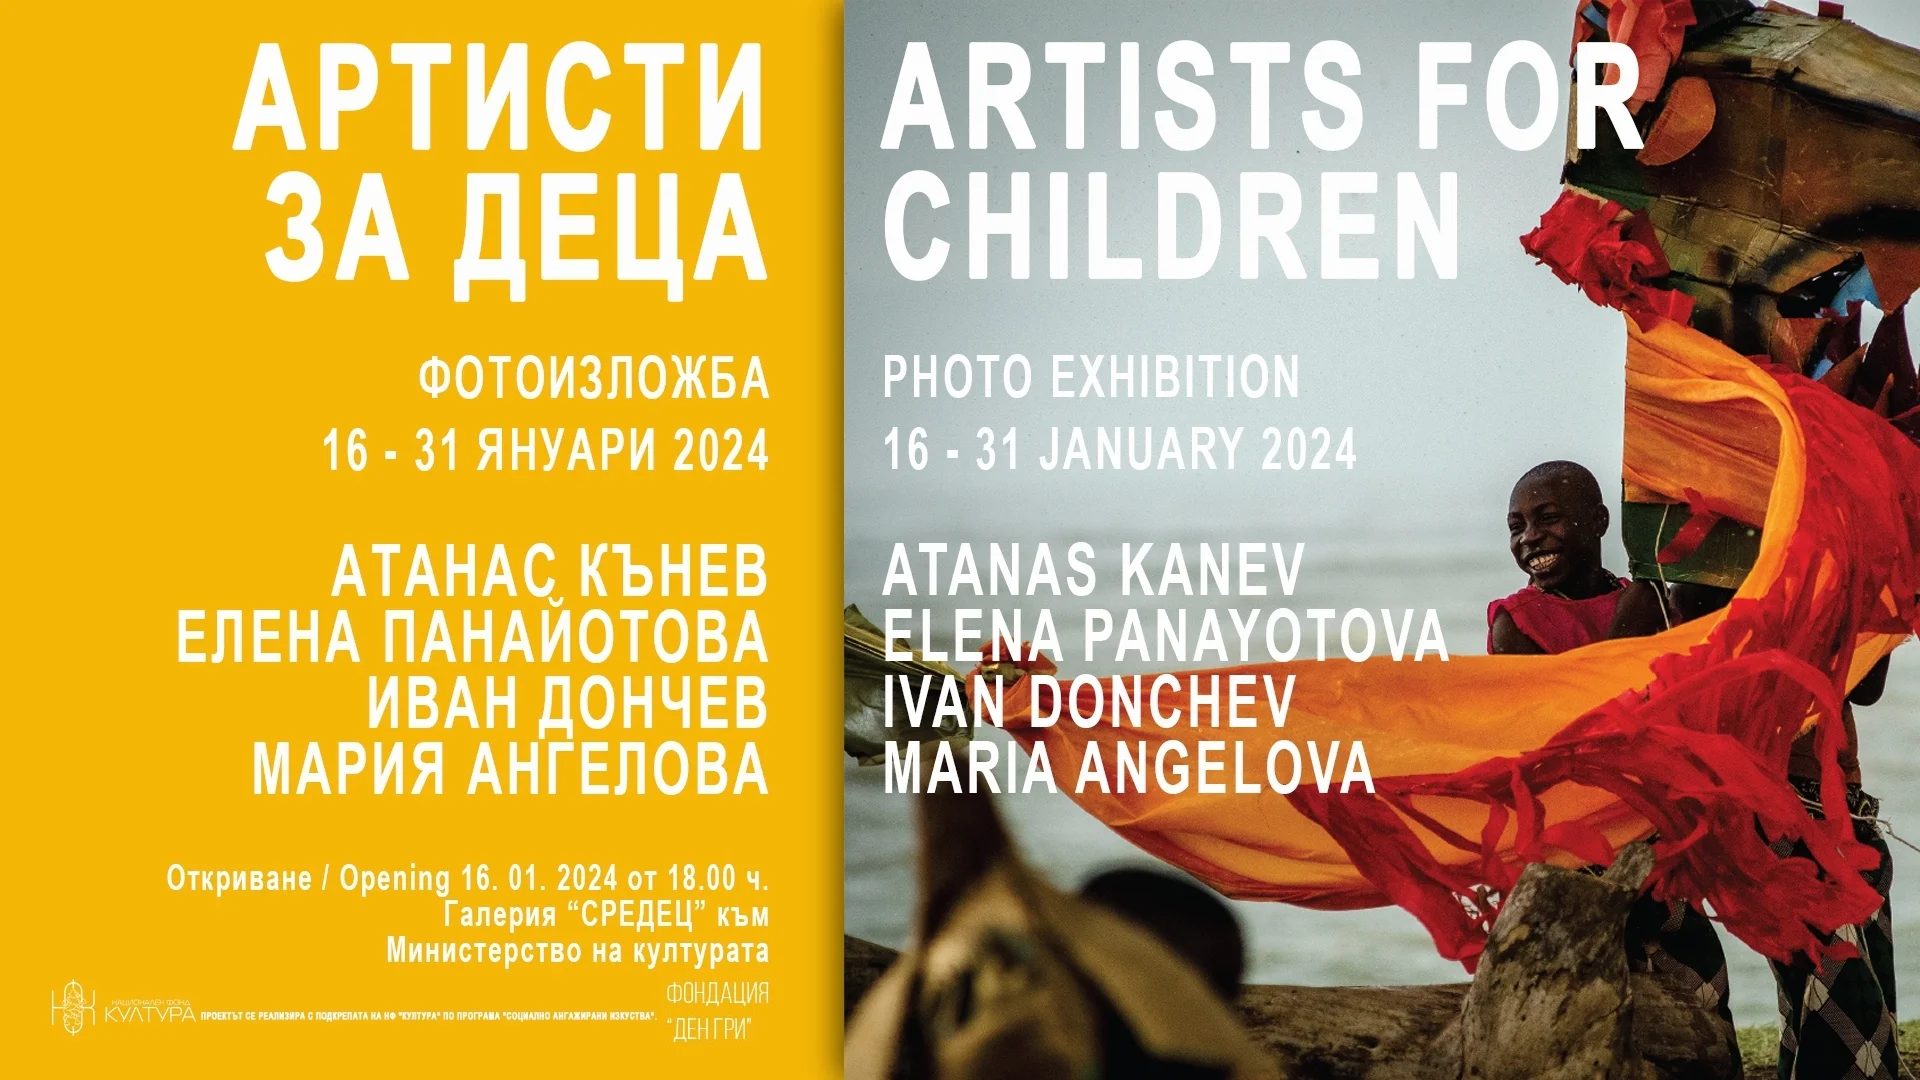 Фотоизложбата "Артисти за деца" комбинира творби на различни автори